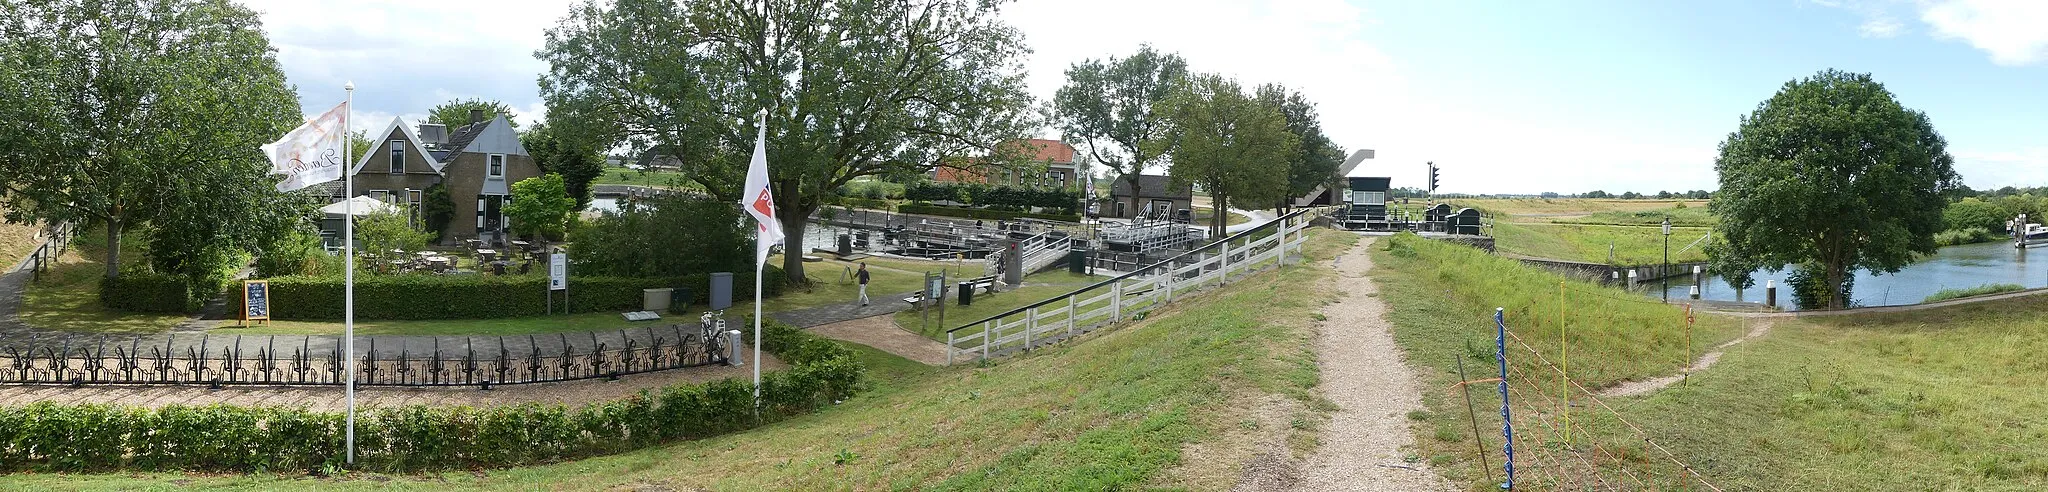 Photo showing: Zicht op de omgeving rond het sluizencomplex Benedensas en restaurant Beneden Sas niet ver van De Heen